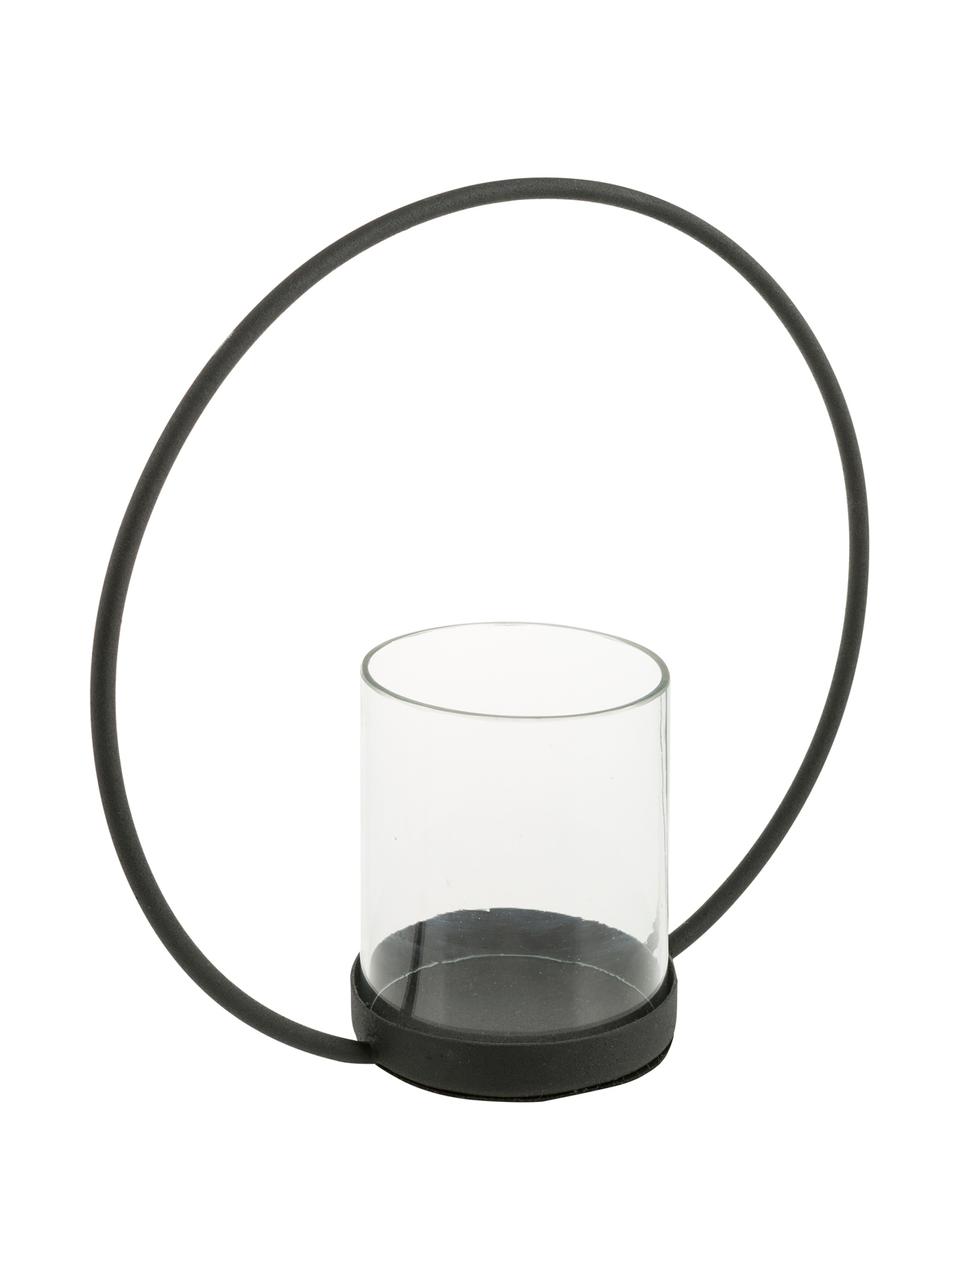 Windlicht Sander, Halterung: Edelstahl, lackiert, Windlicht: Glas, Schwarz, Transparent, 25 x 25 cm